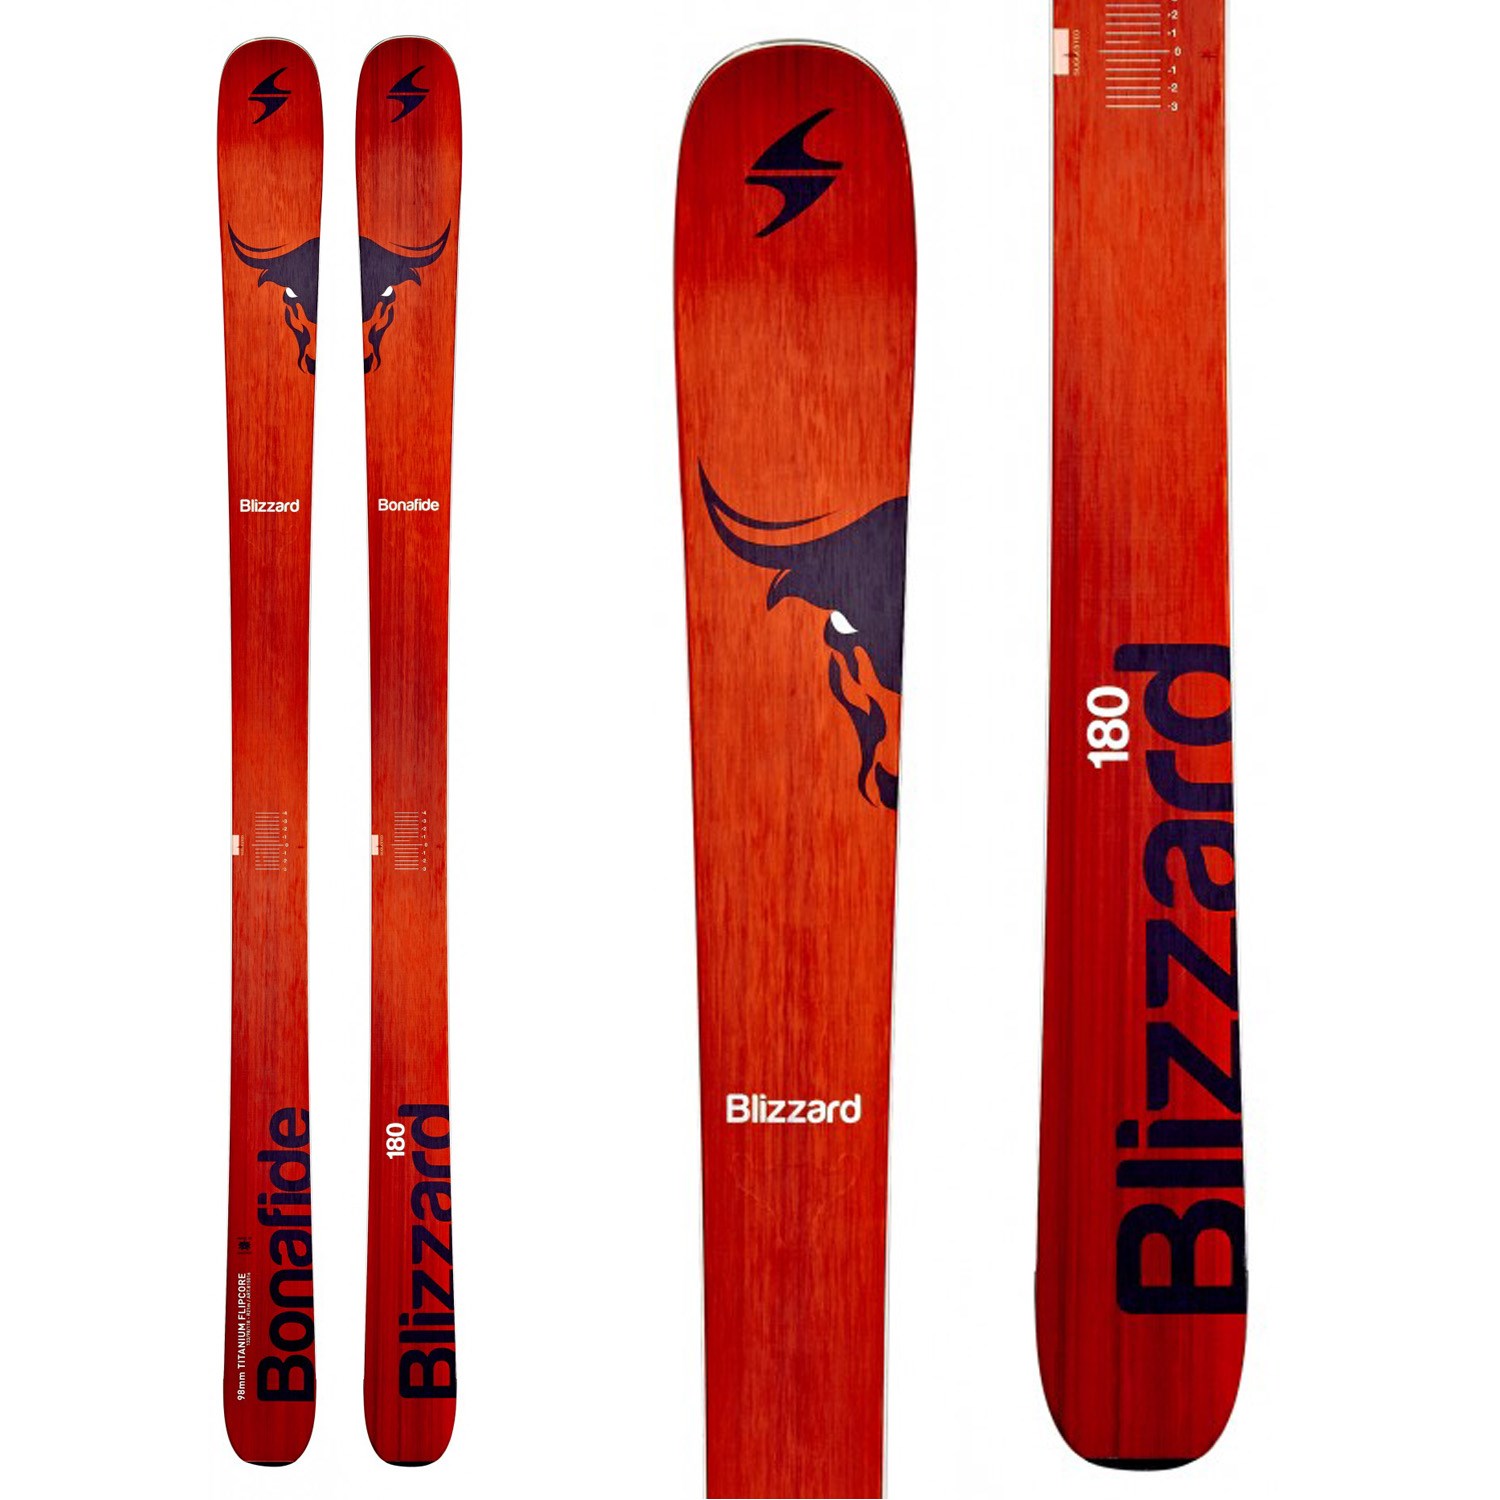 Blizzard Bonafide Skis 2015 | evo